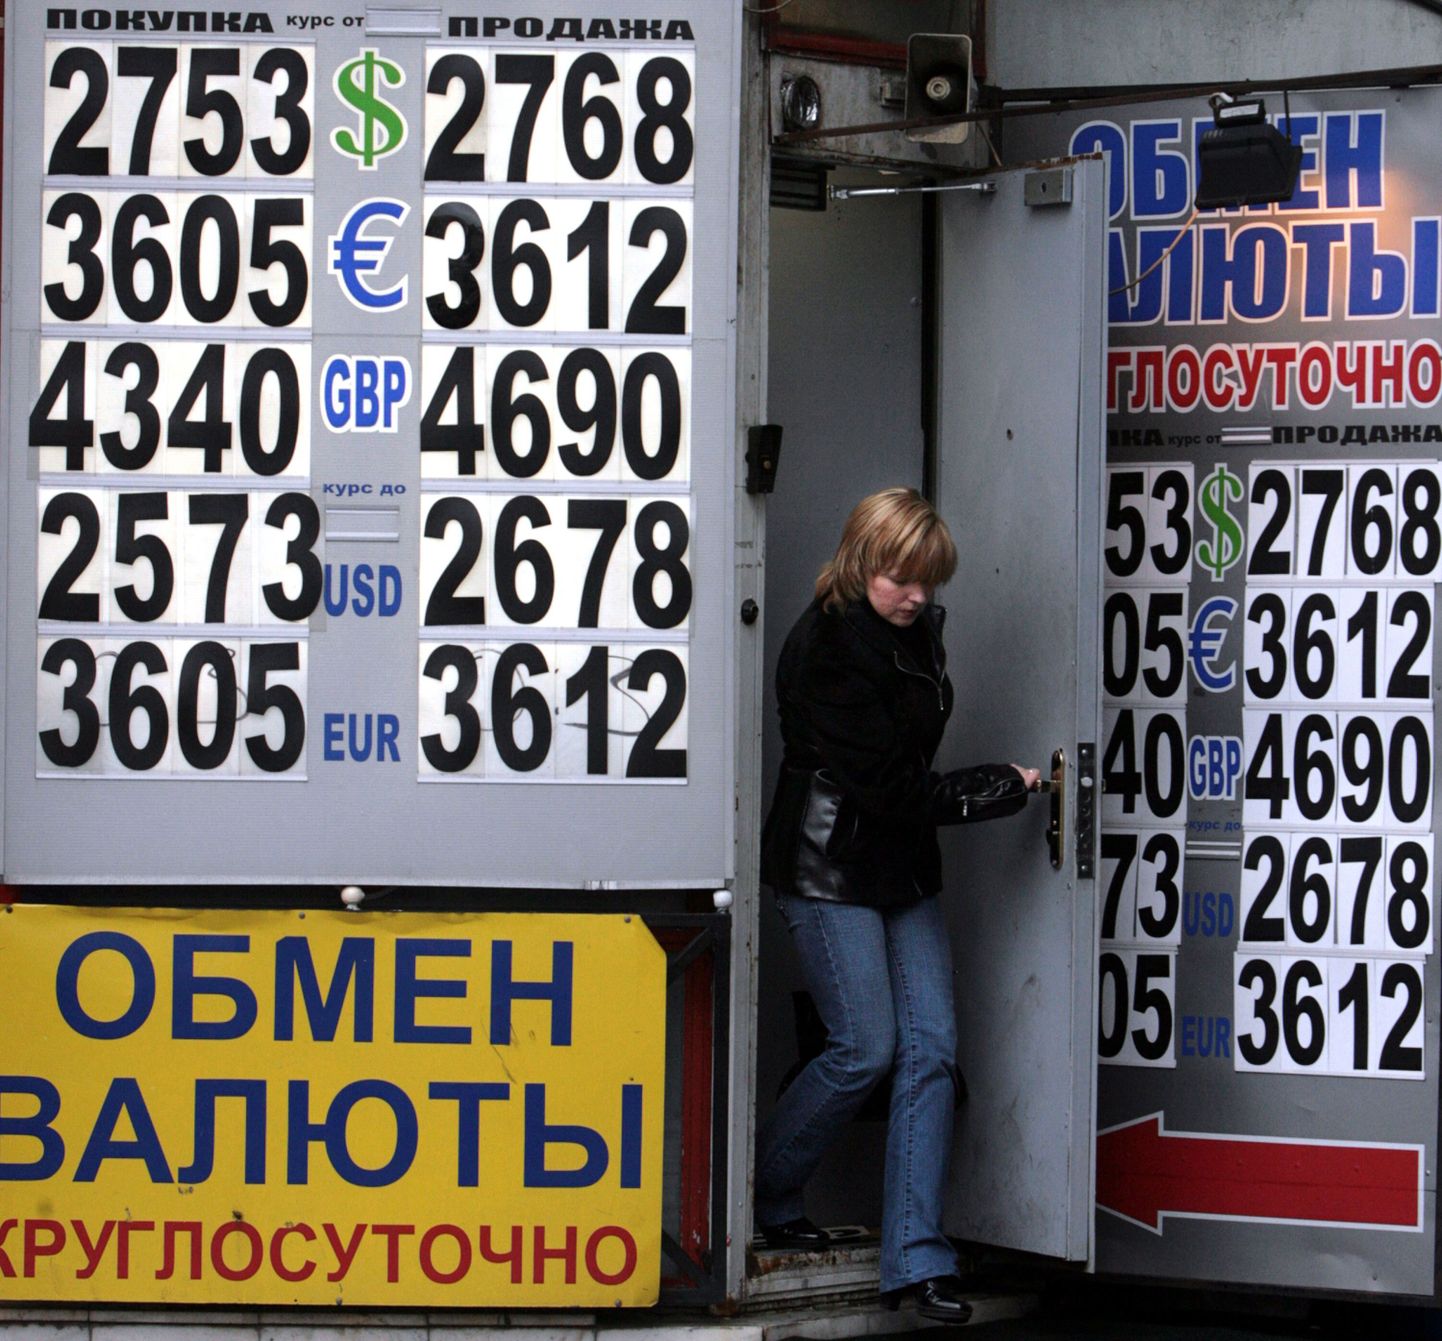 Valuutavahetuspunkt Moskvas